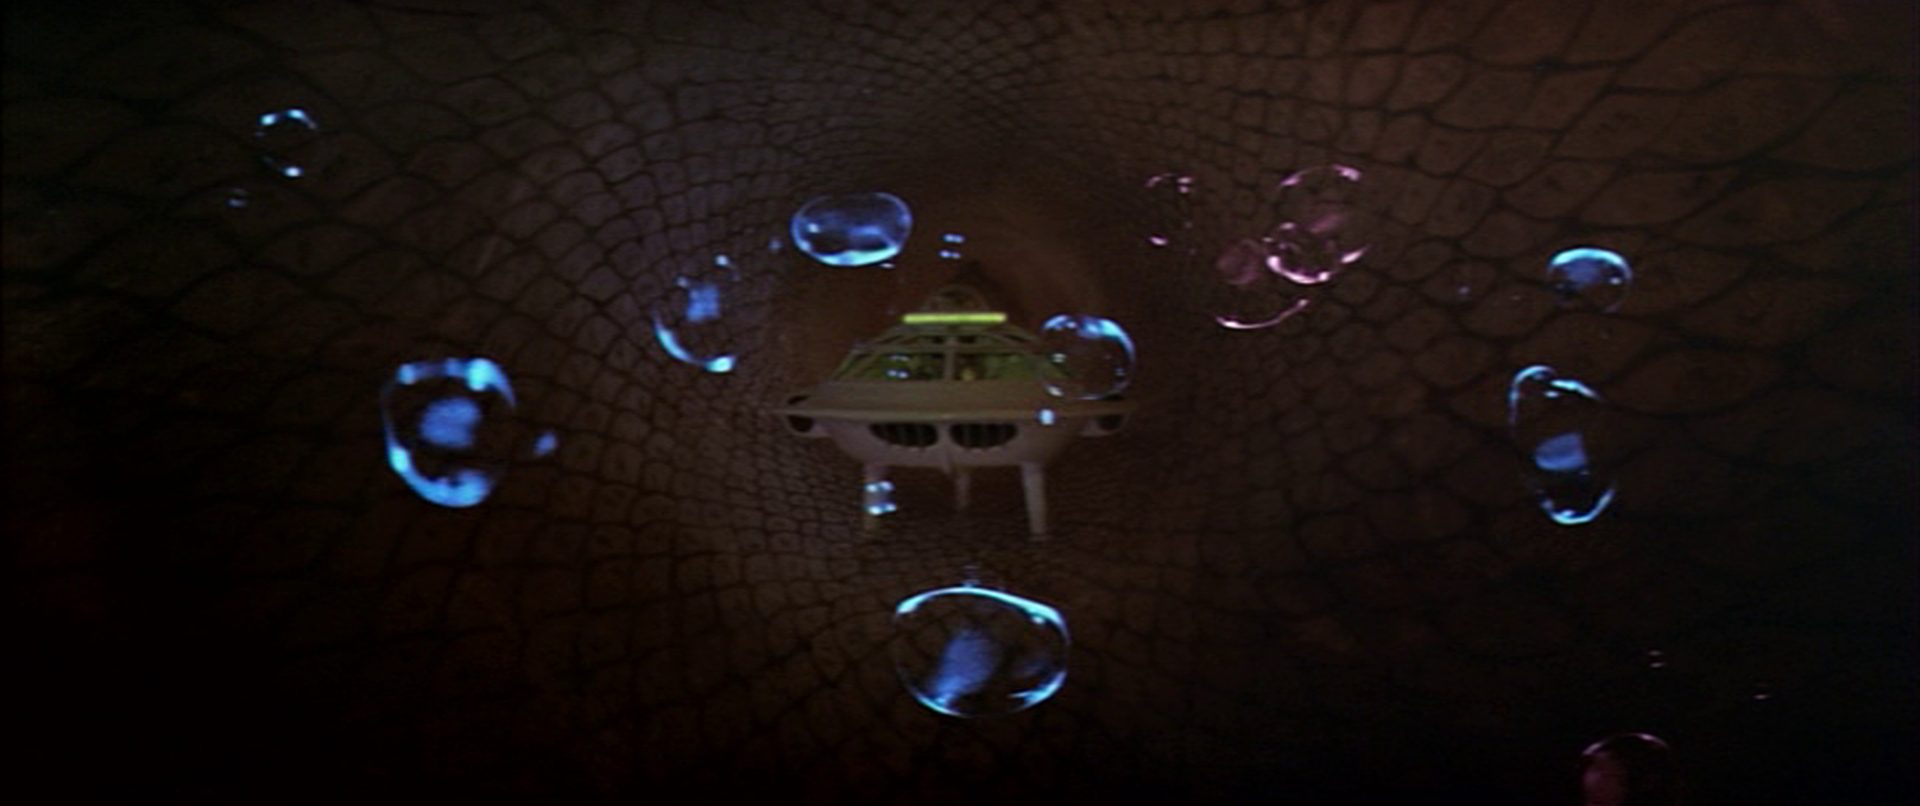 Frontalaufnahme des futuristischen U-Bootes im menschlichen Körper, umgeben von transparenten Bläschen.